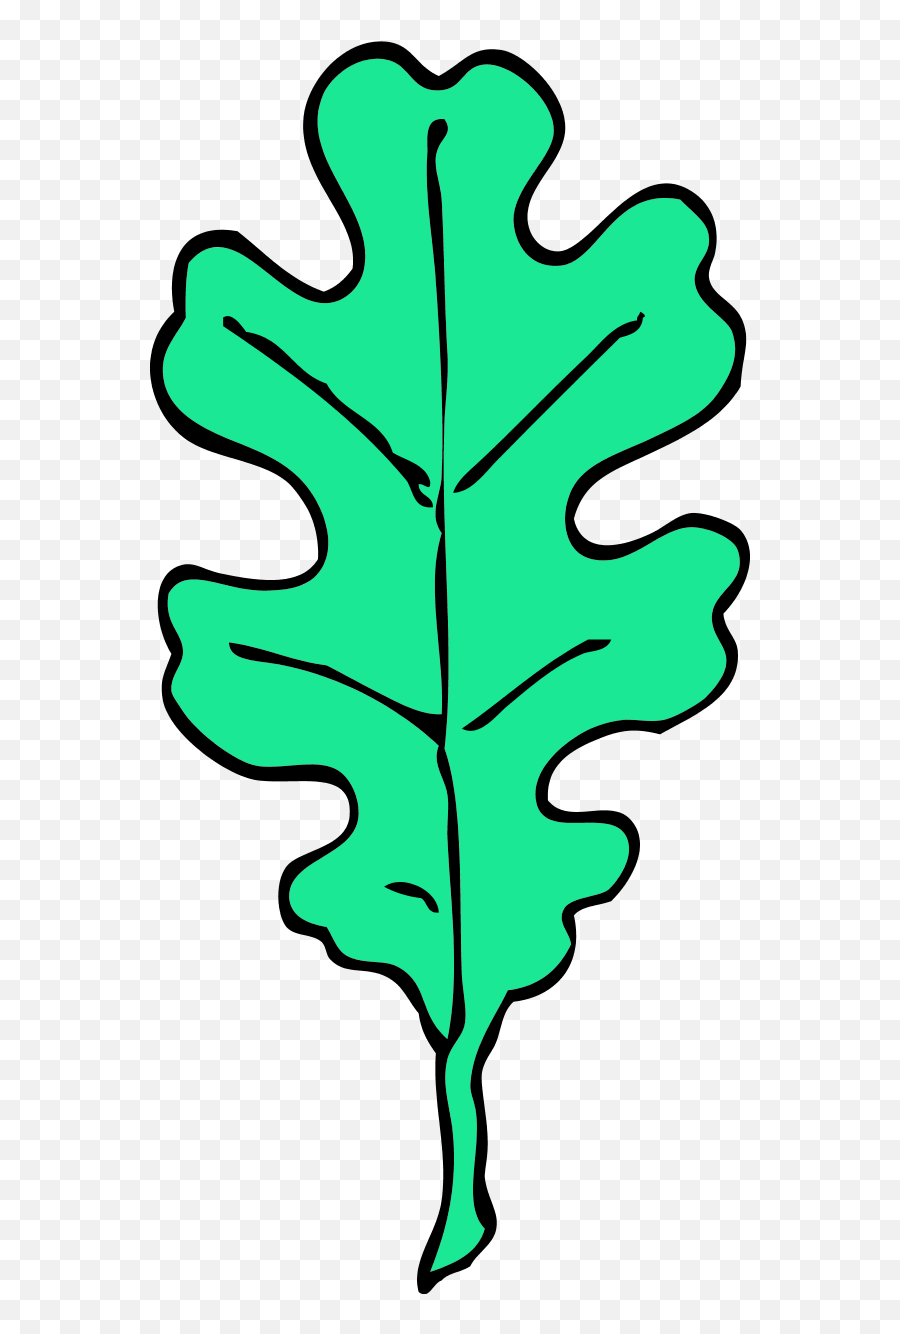 Free Oak Leaf Vector Png Images - Outline Black And White Clipart Leaf Emoji,Oak Leaf Clipart